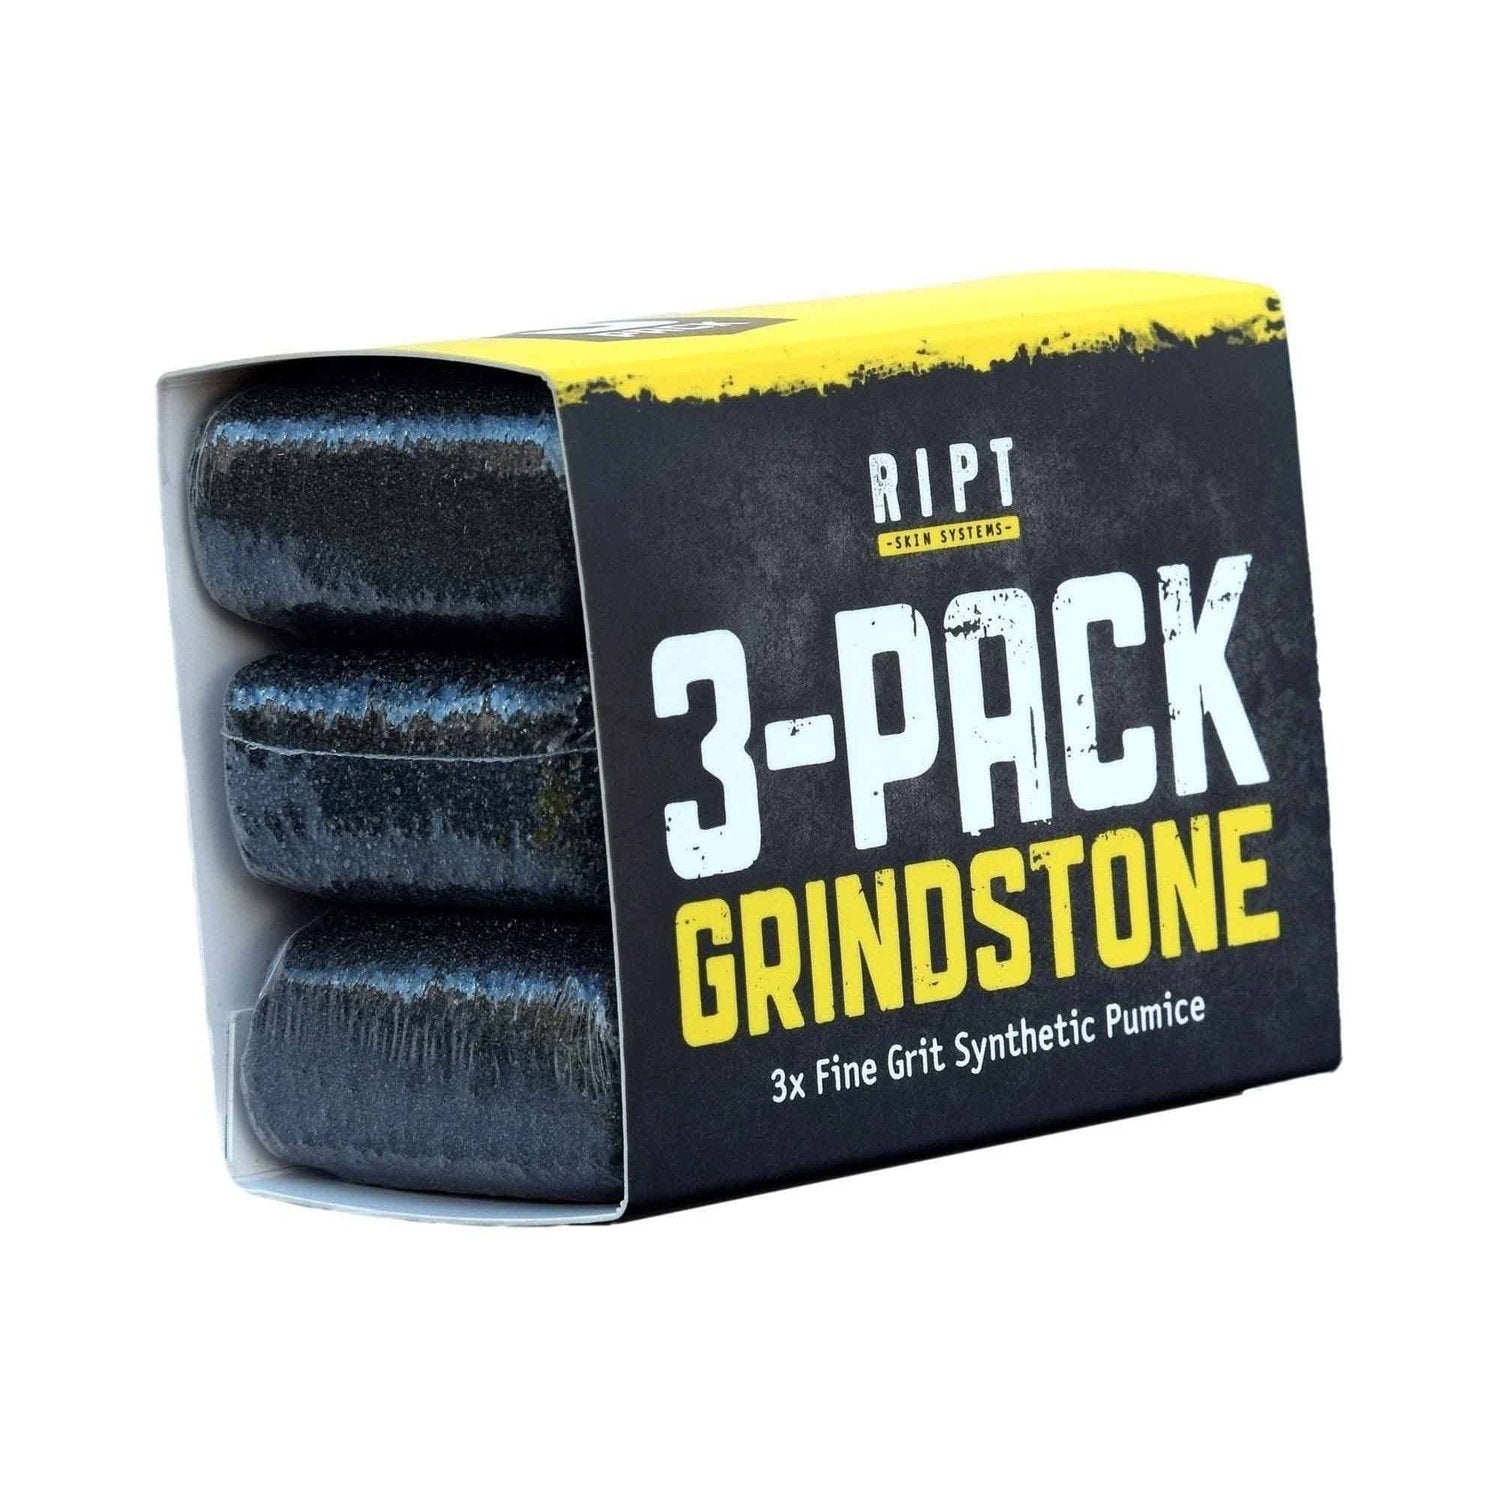 RIPT Skin Systems Grindstone 3-Pack (Bimsstein für Schwielen) kaufen bei HighPowered.ch